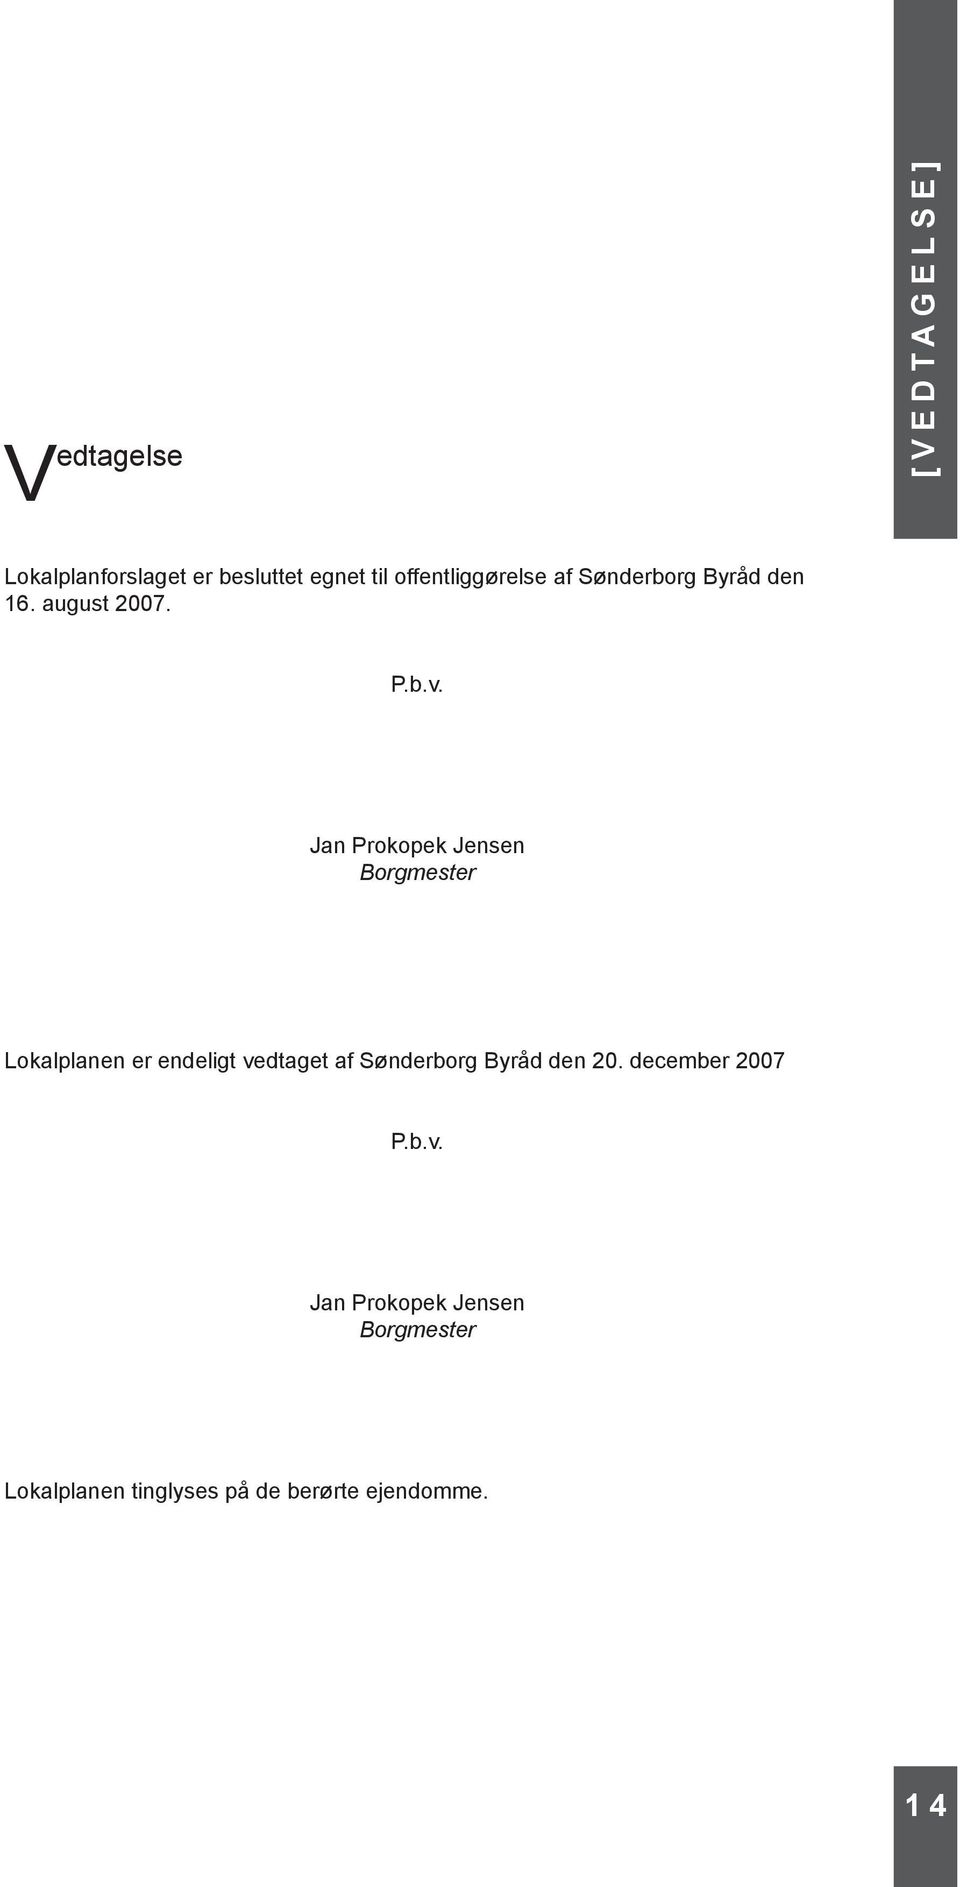 Jan Prokopek Jensen Borgmester Lokalplanen er endeligt vedtaget af Sønderborg Byråd